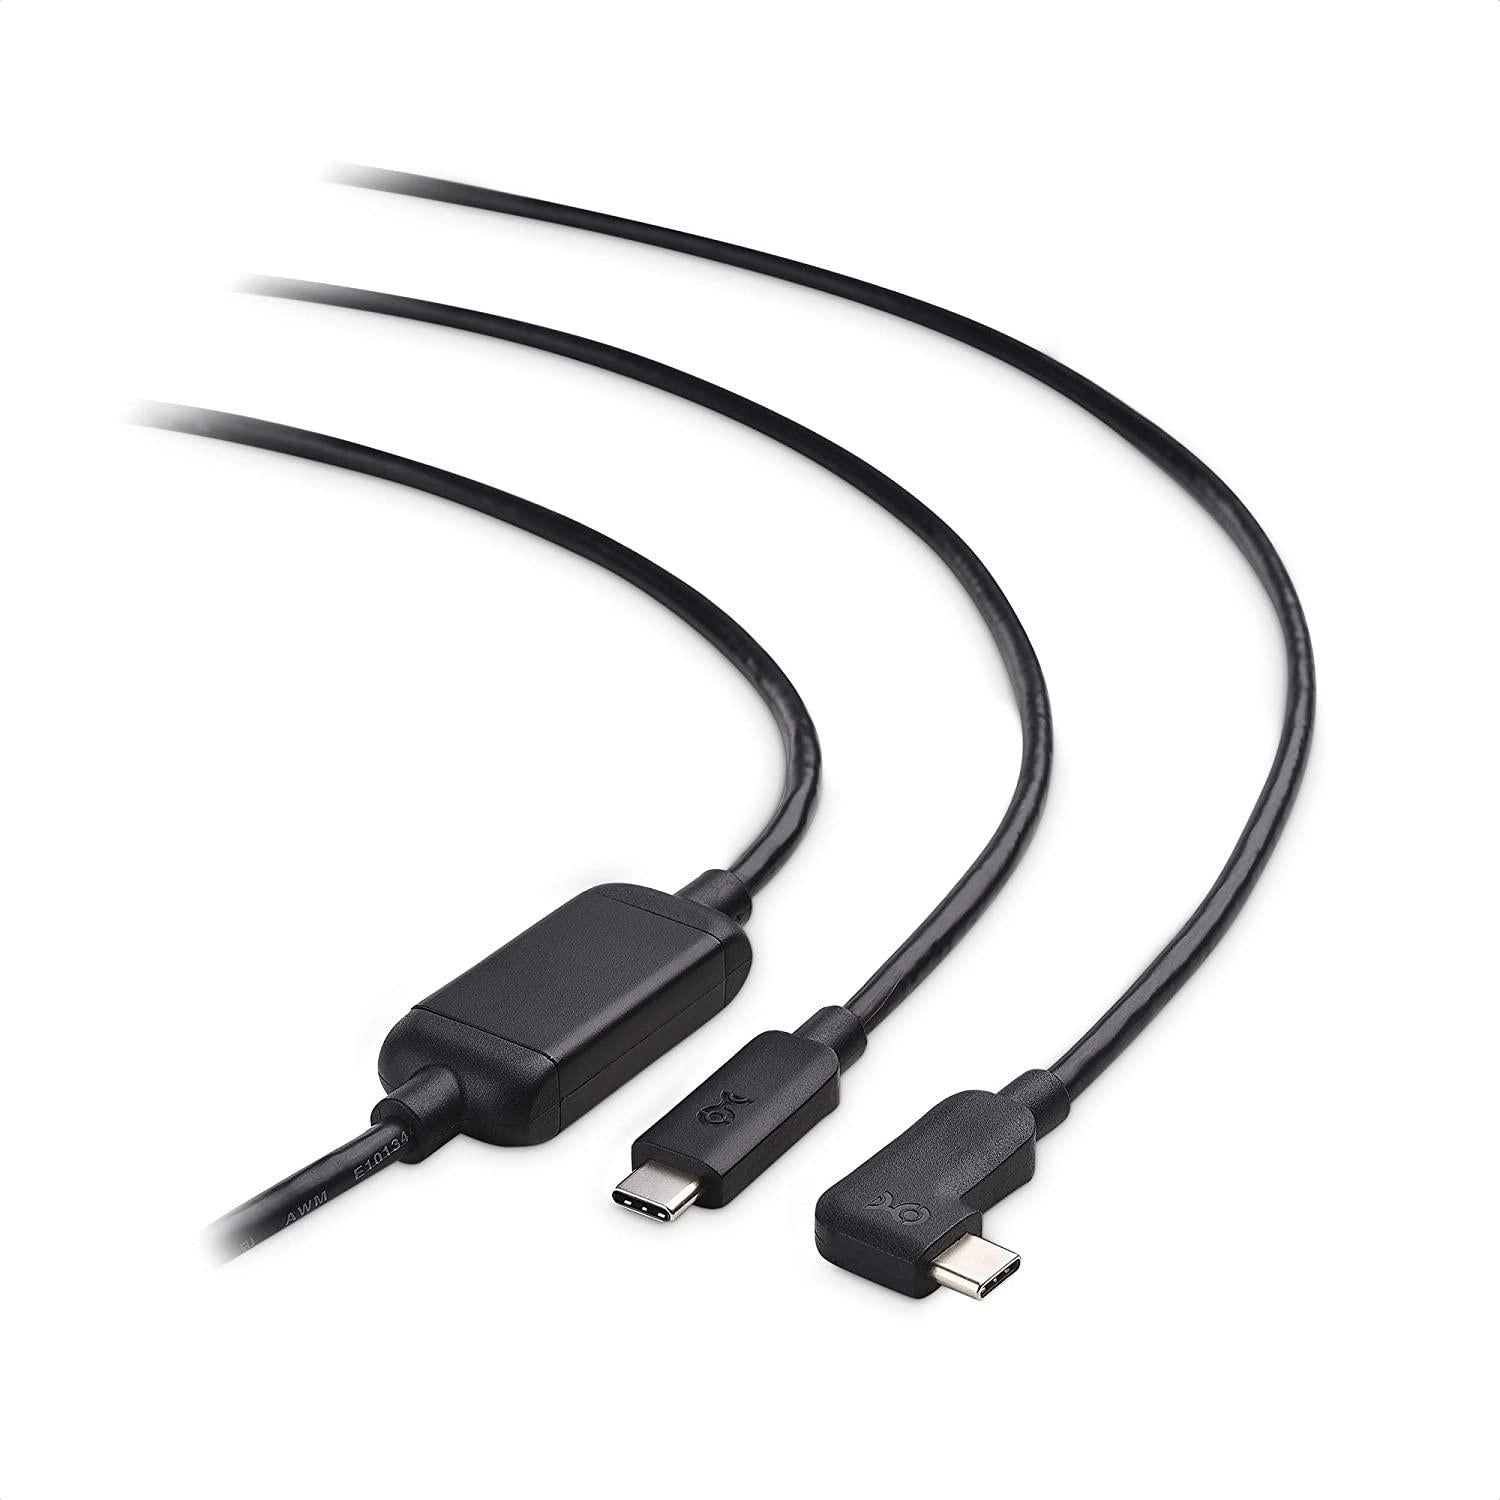 Cable Matters aktiv 5m USB-C til USB-C VR Link-kabel for Oculus Quest 2 USB3.2 Gen1 5Gbps 3A Super Speed VR Link-kabel